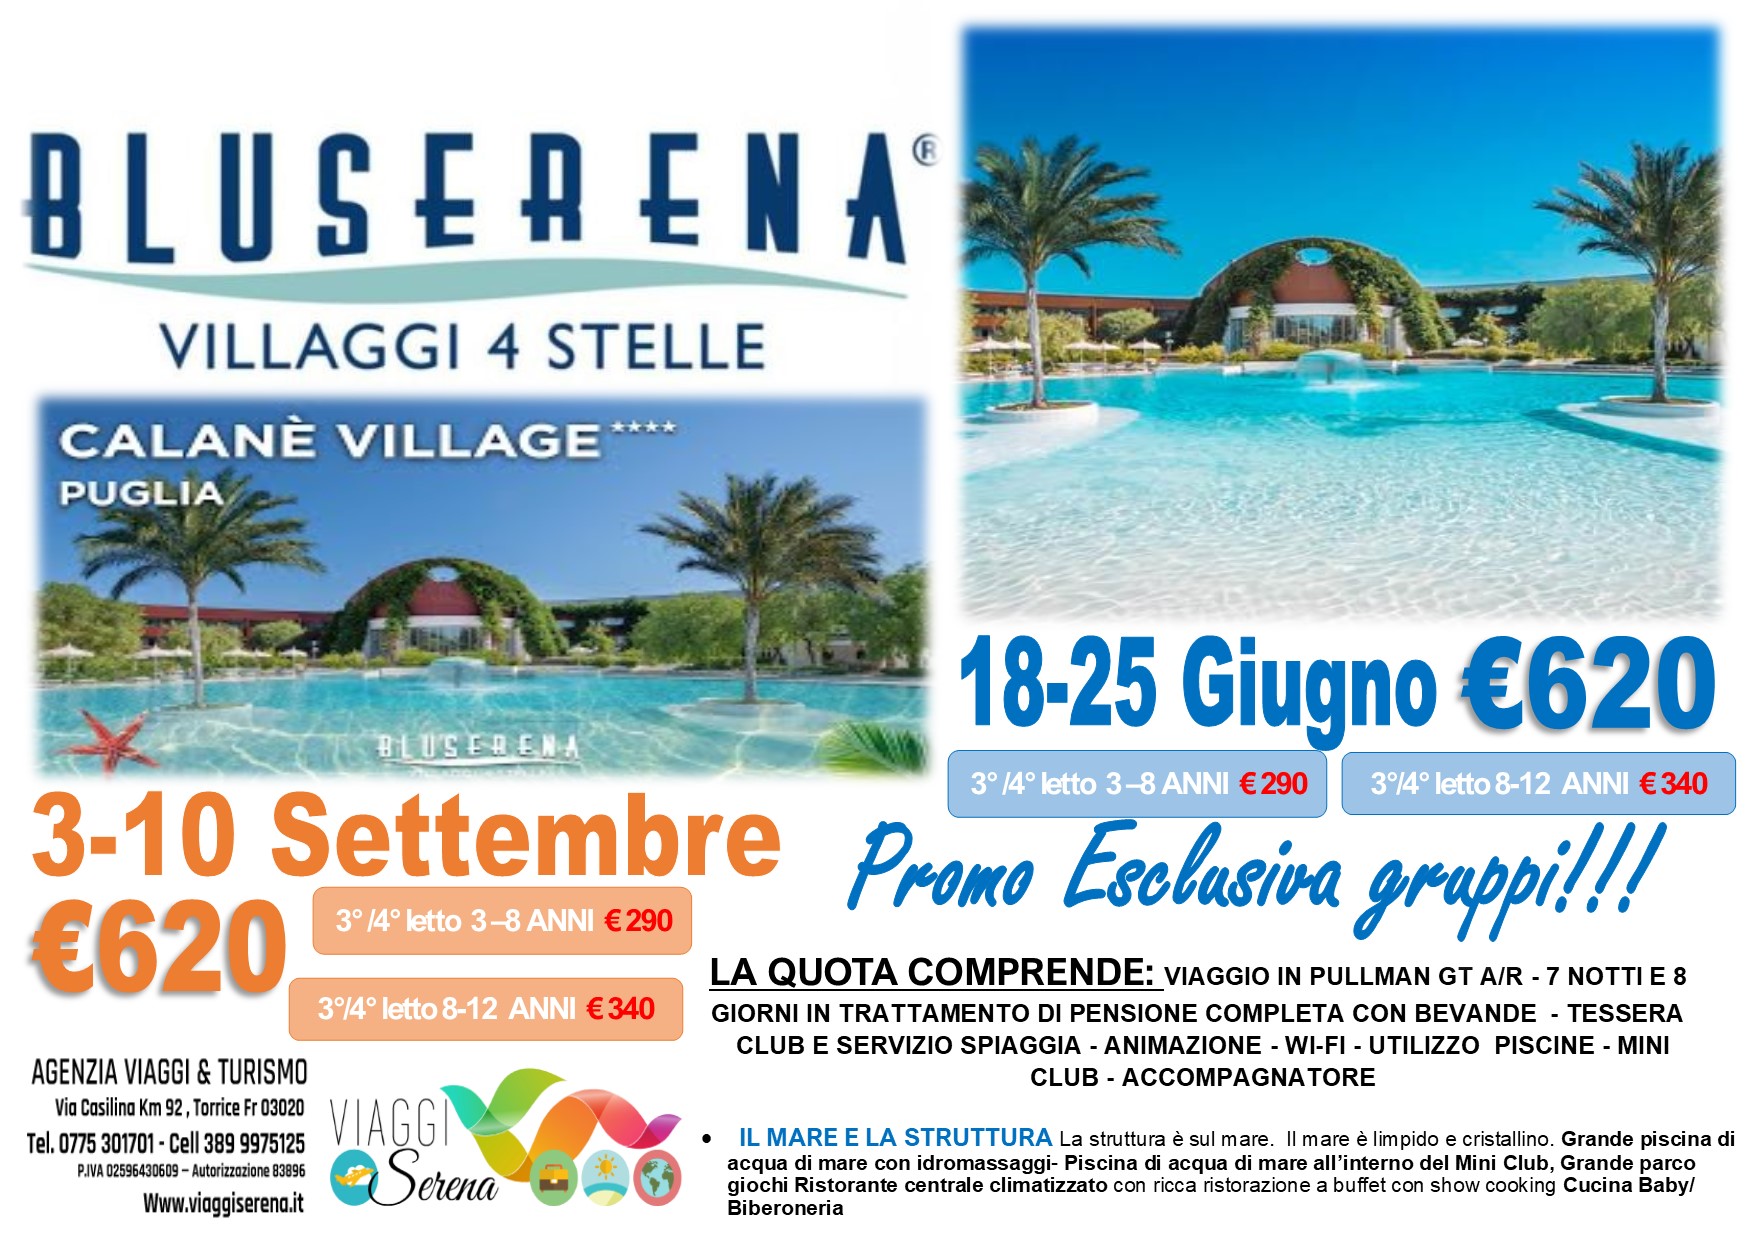 Viaggi di Gruppo: Soggiorno Mare BLU SERENA “Villaggio Calane” 18-25 Giugno €620,00